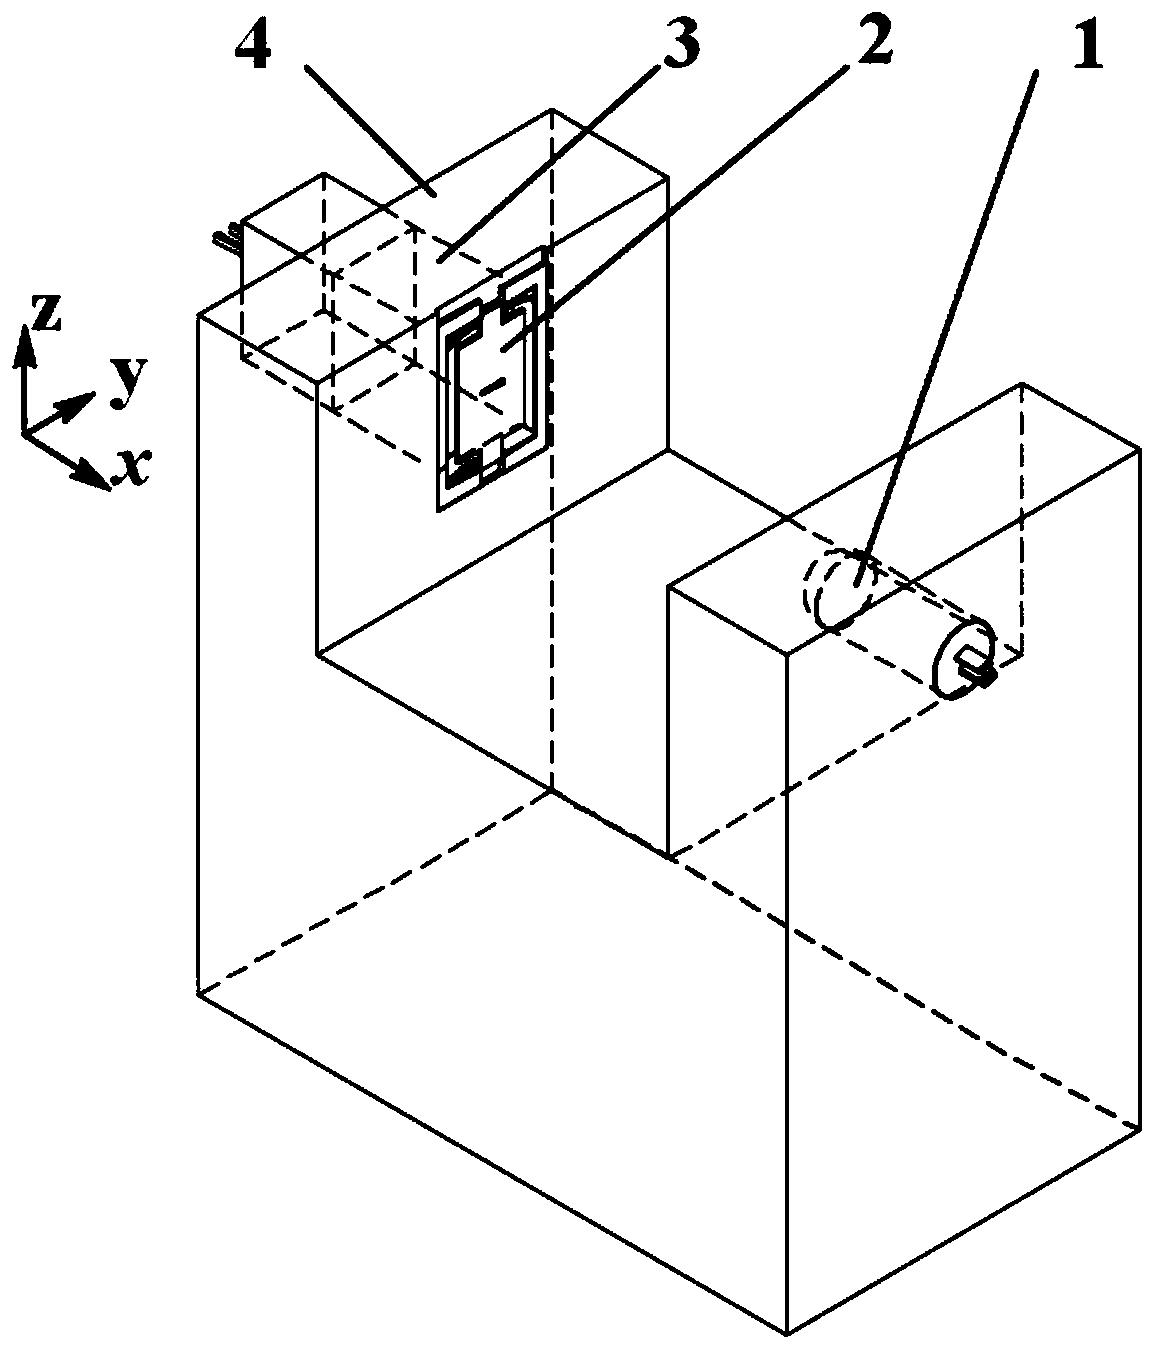 A low-g value double-slit interferometric mems microgravity measurement device